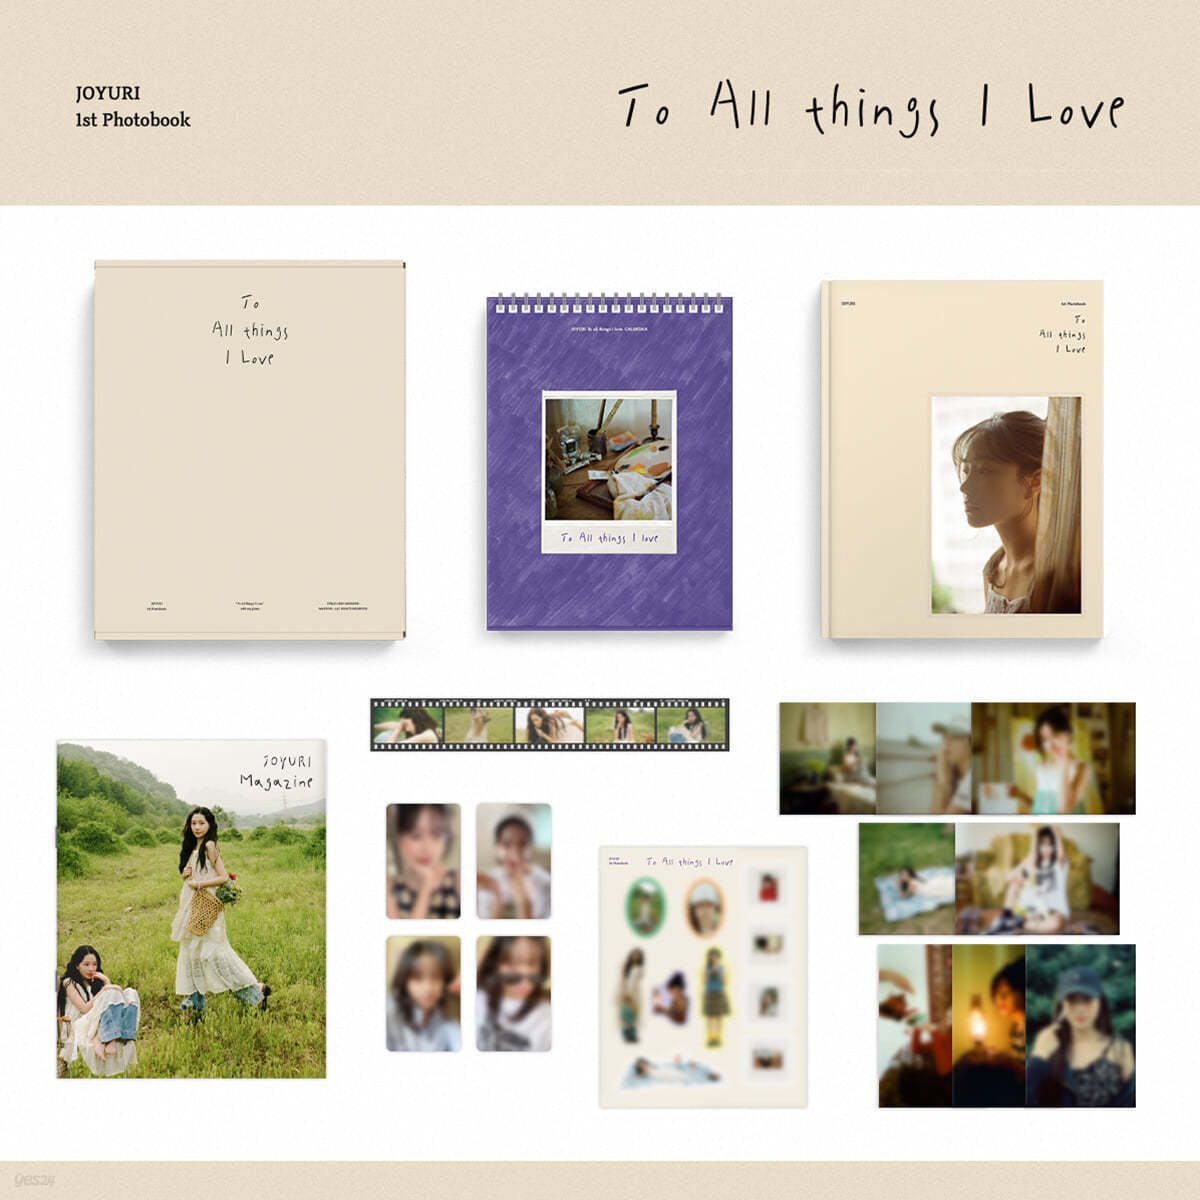 조유리 (JOYURI) - 1st Photobook [To All things I Love]